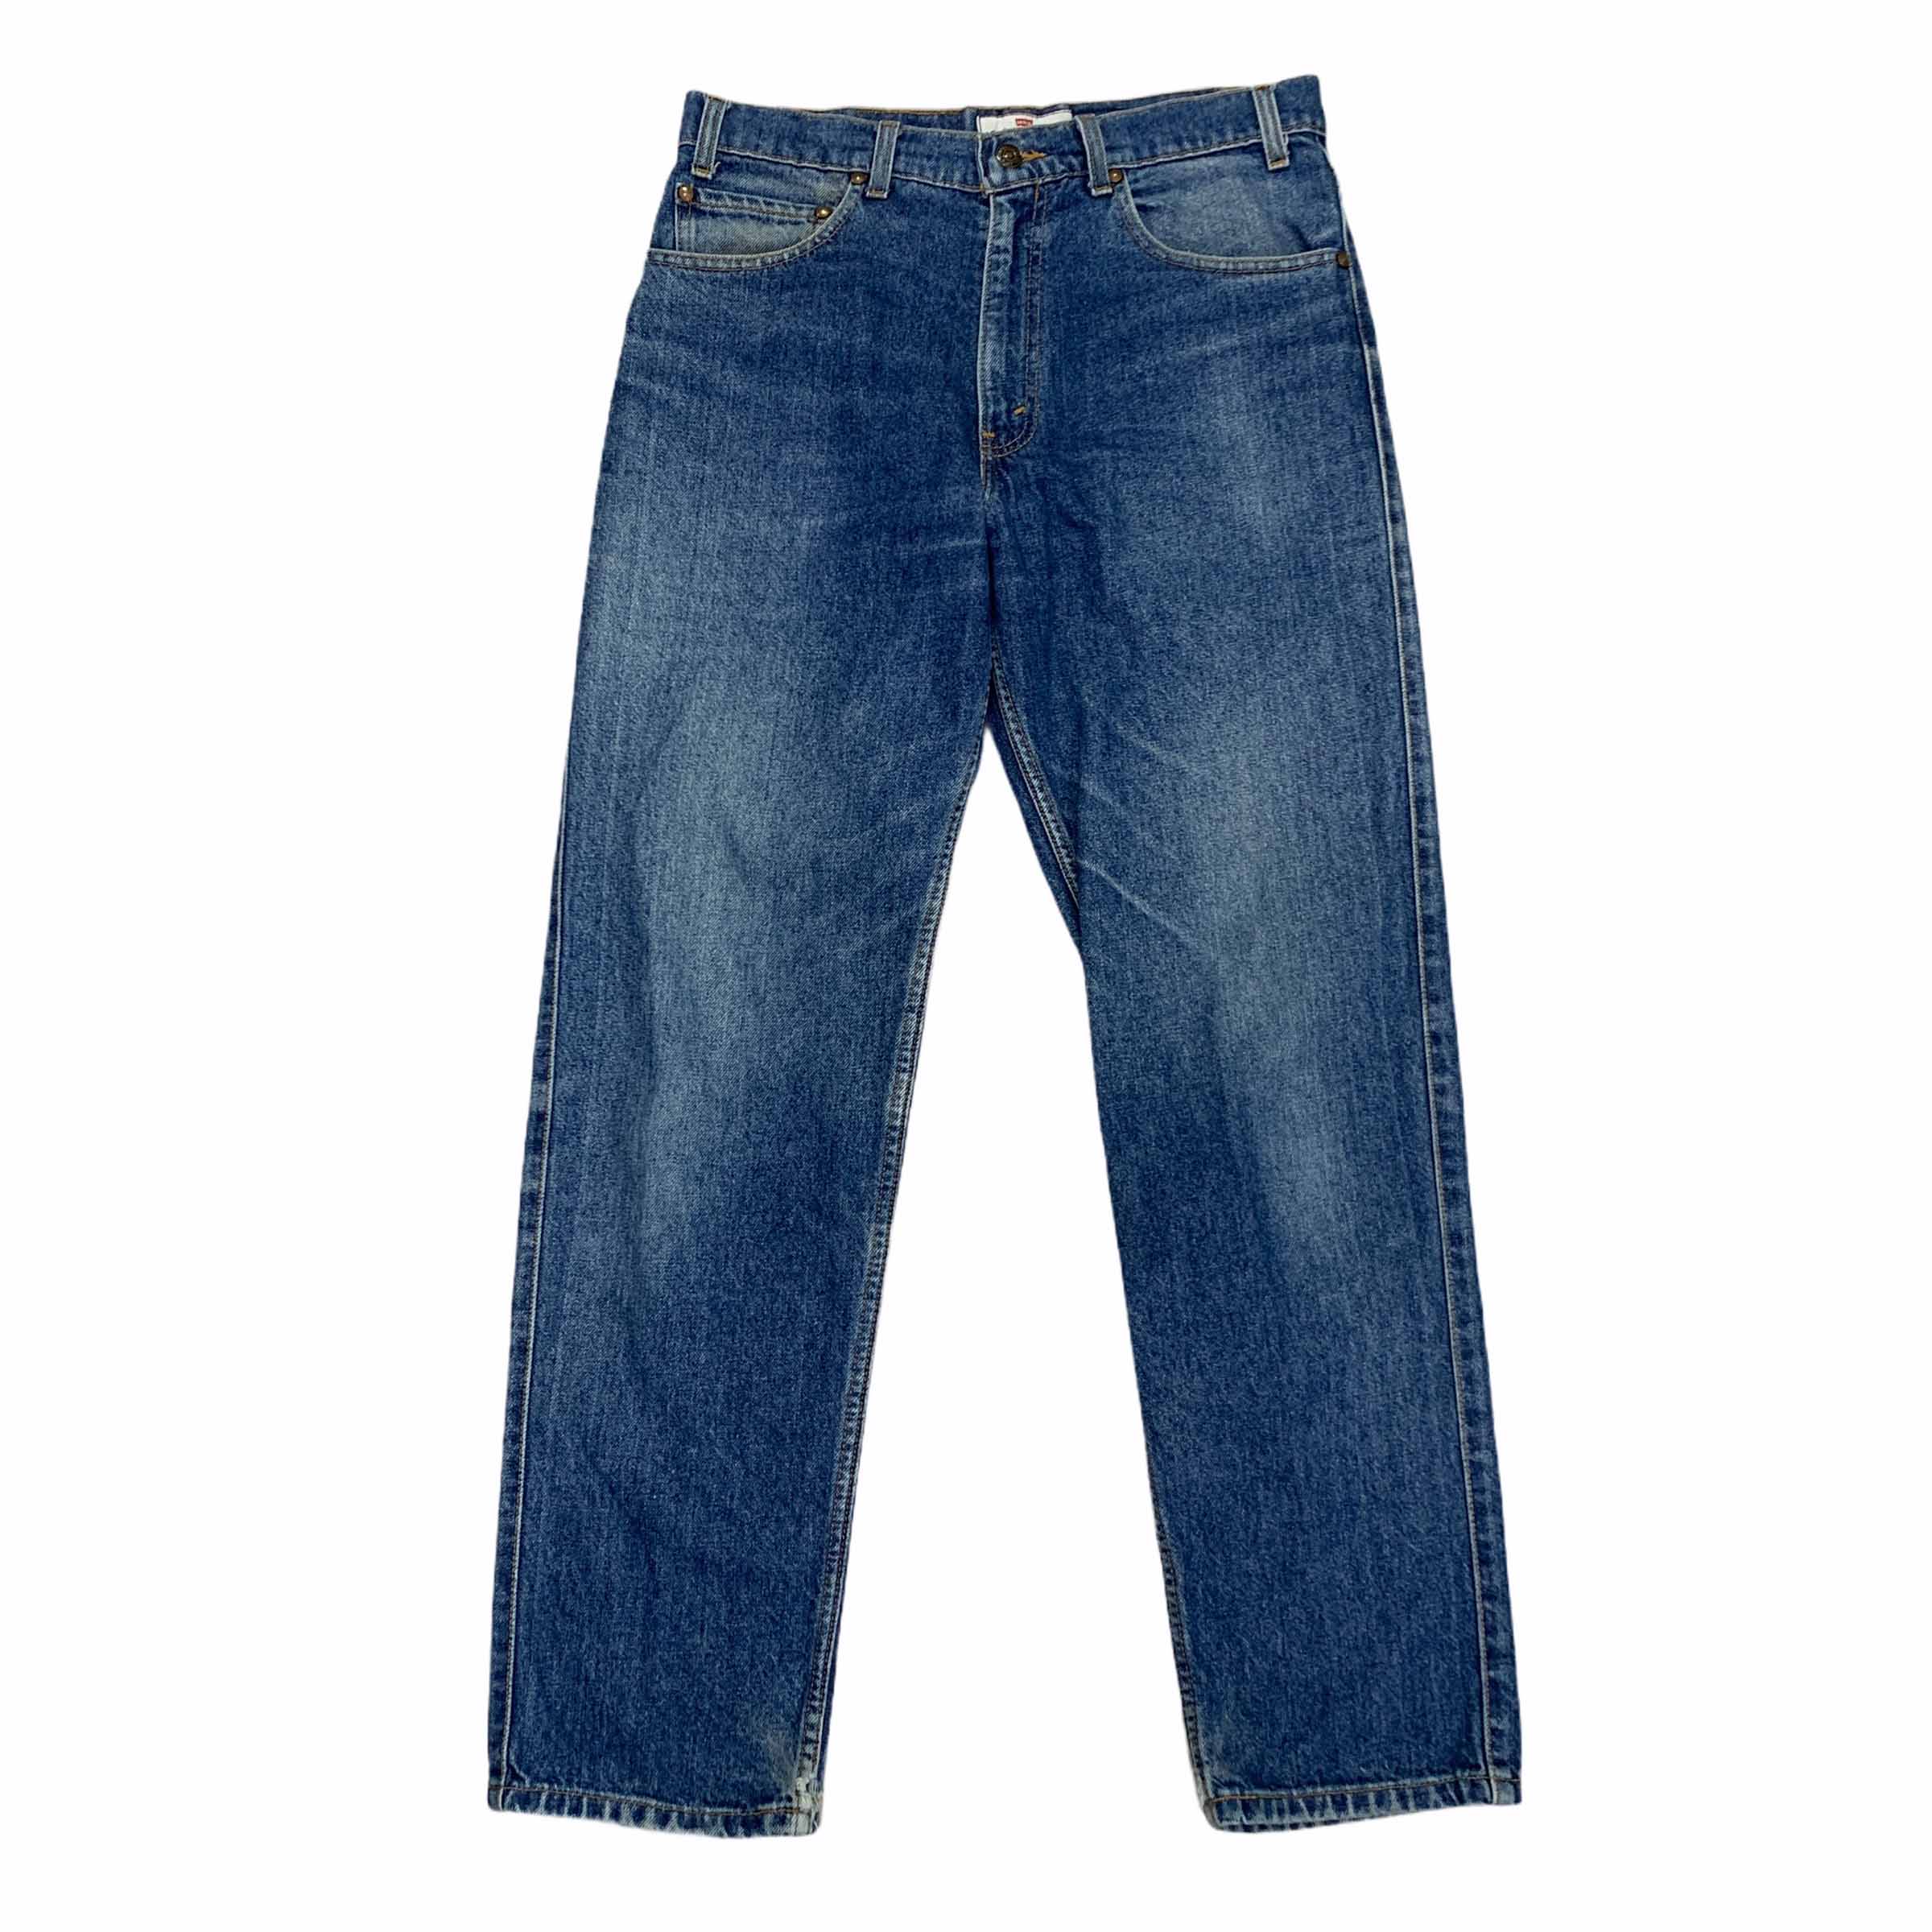 [Levis] (Vintage) 540 Denim pants - Size 32/30